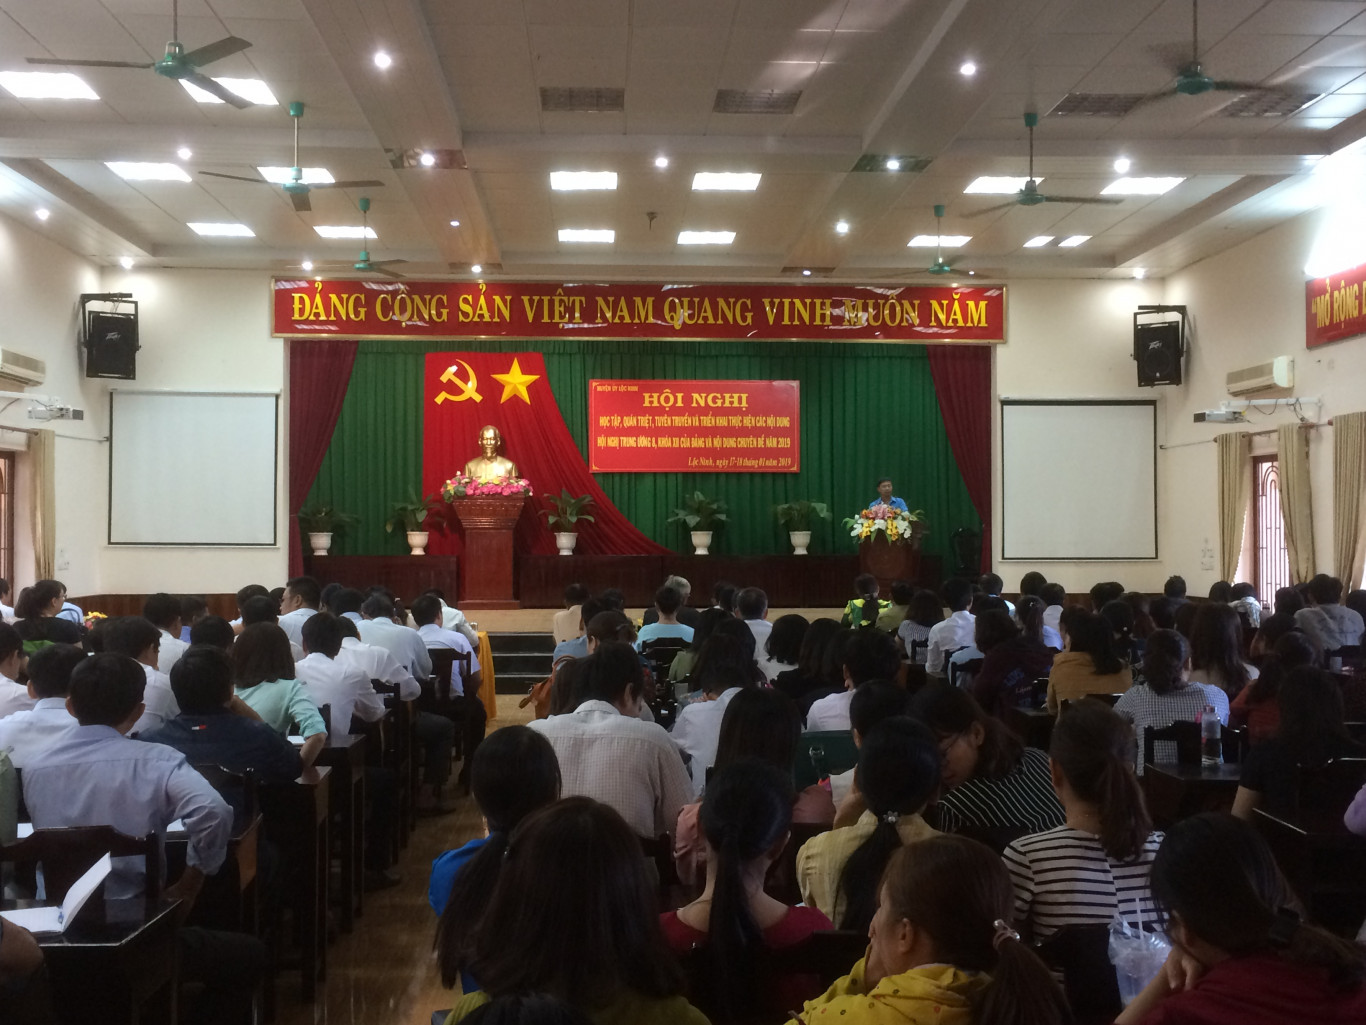 Gần 400 cán bộ, công nhân, viên chức, lao động huyện Lộc Ninh được học tập, quán triệt các nội dung nghị lần thứ 8 của BCH Trung ương Đảng khóa XII và các nội dung chuyên đề năm 2019